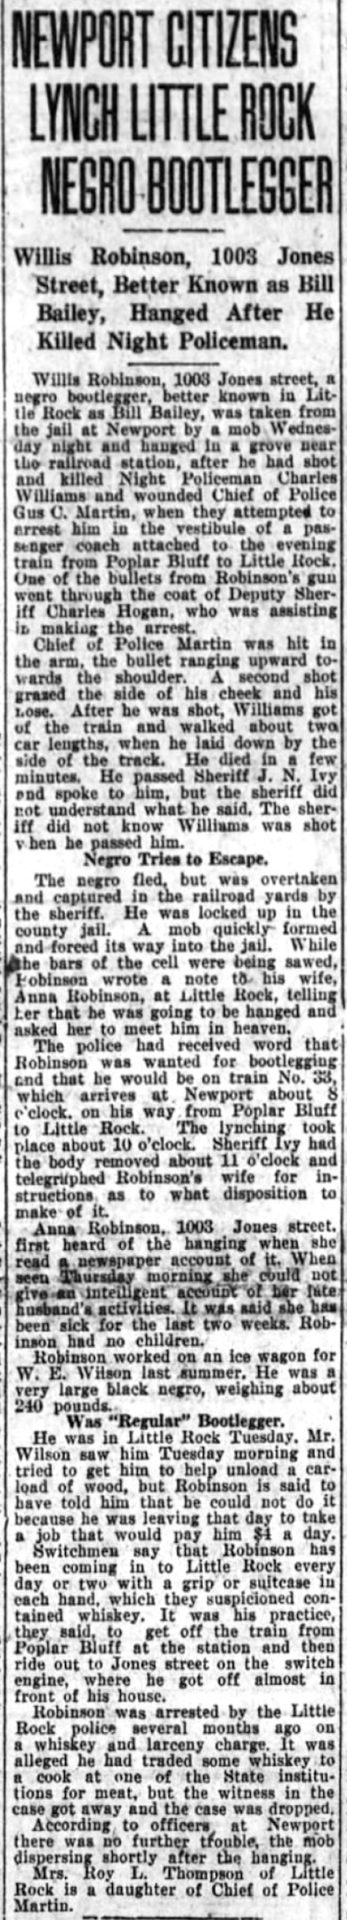 "Newport citizens lynch Little Rock Negro bootlegger" newspaper clipping